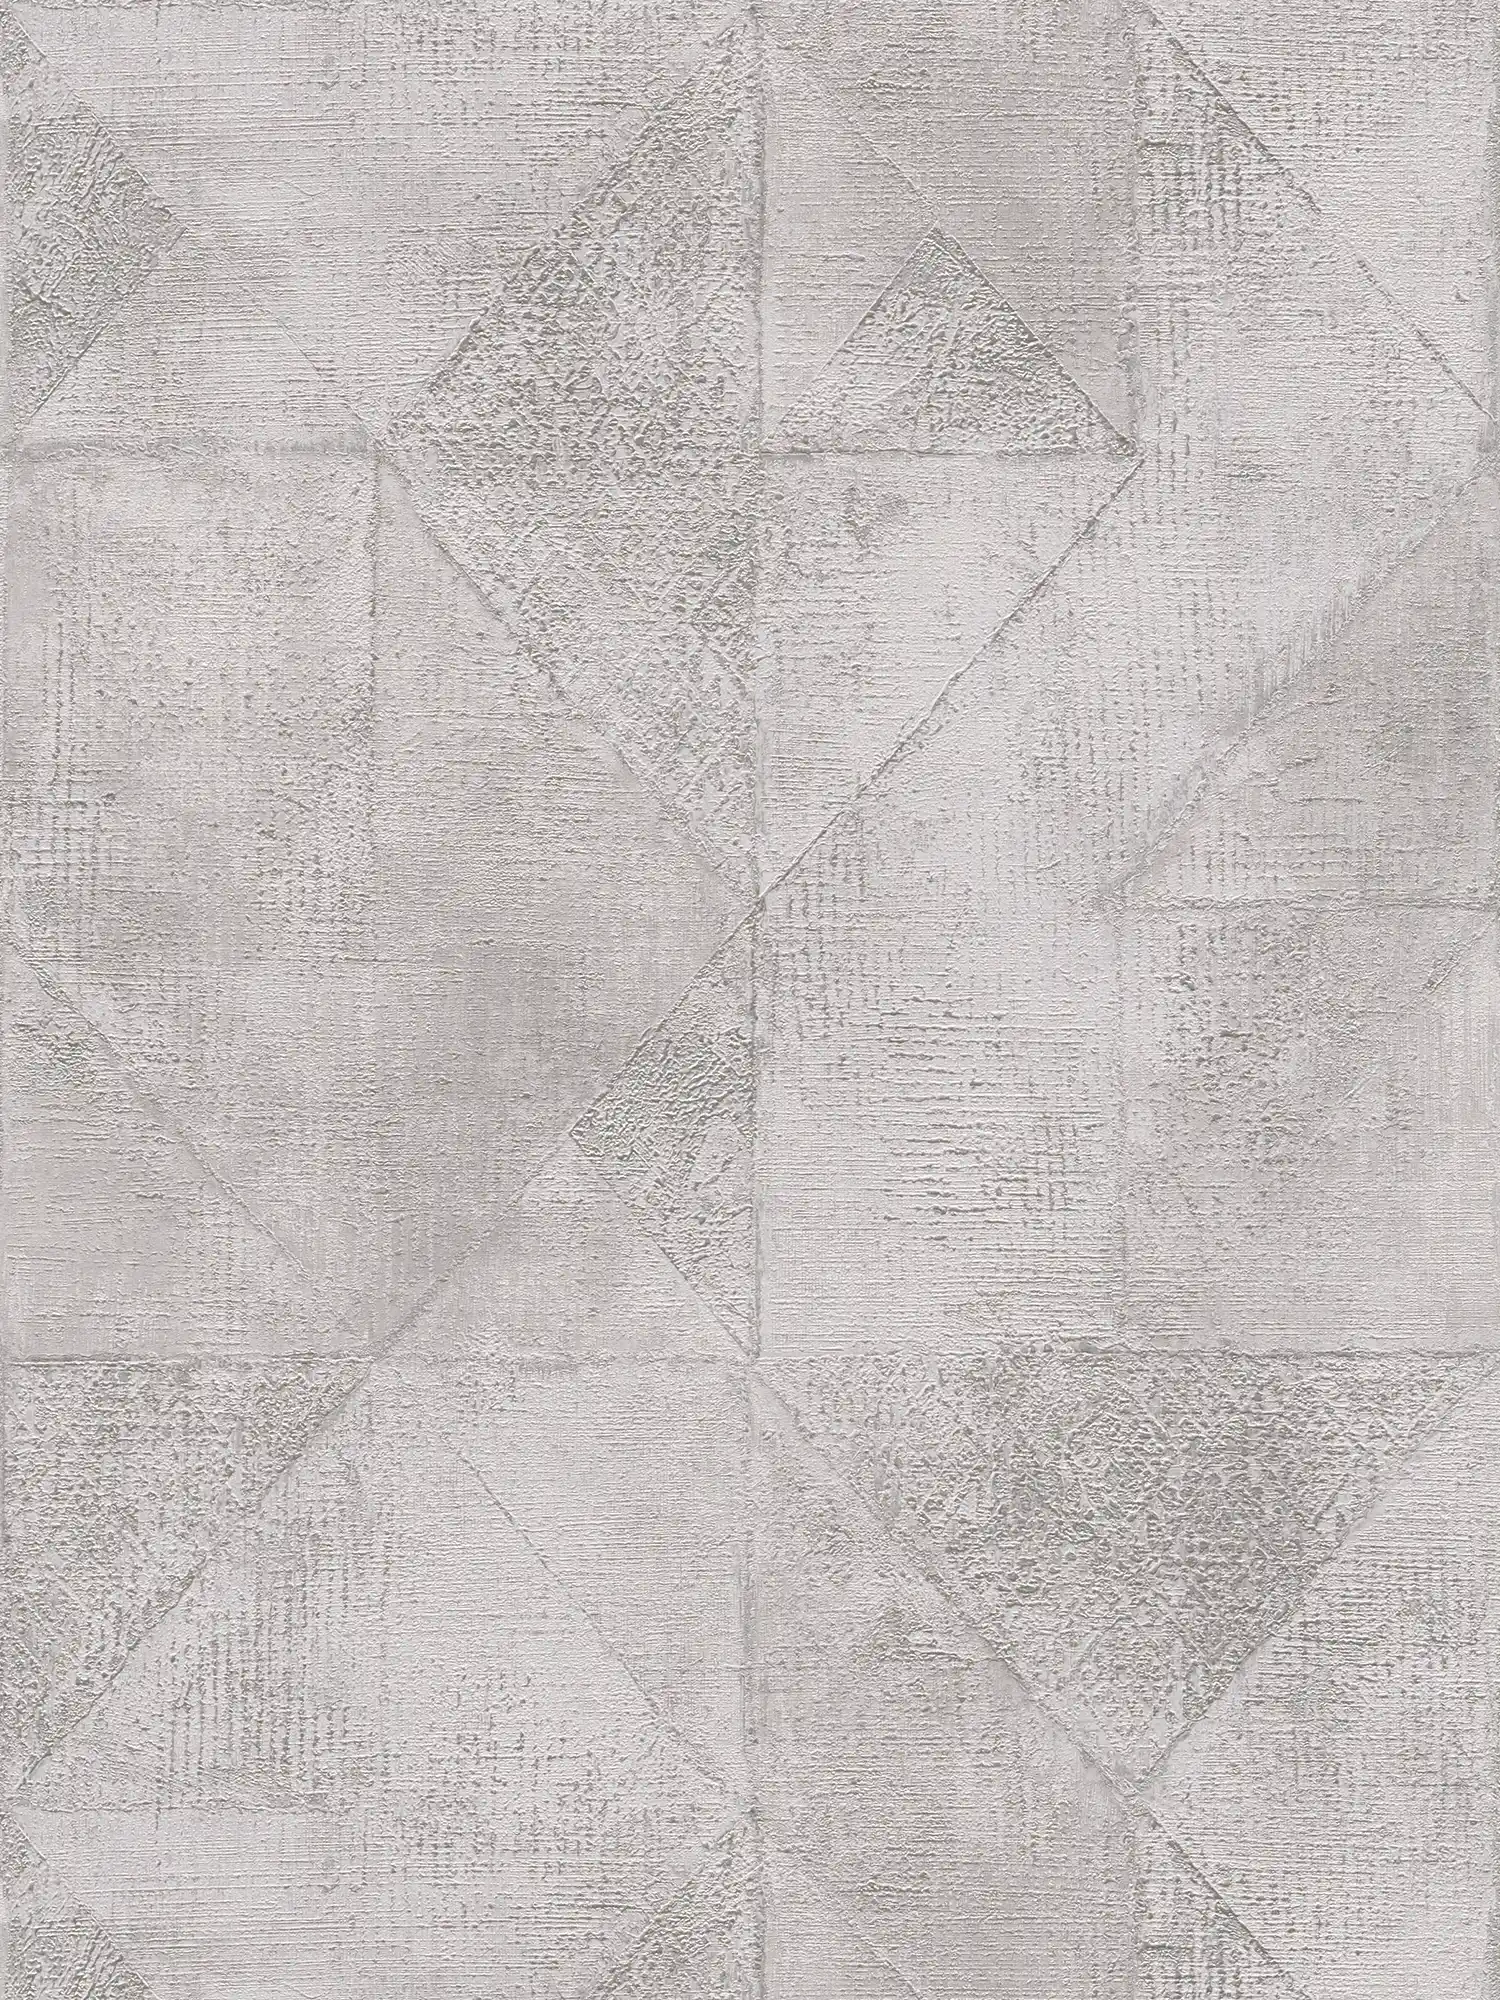 Carta da parati con motivo grafico a triangoli con texture lucida metallizzata - grigio, argento
